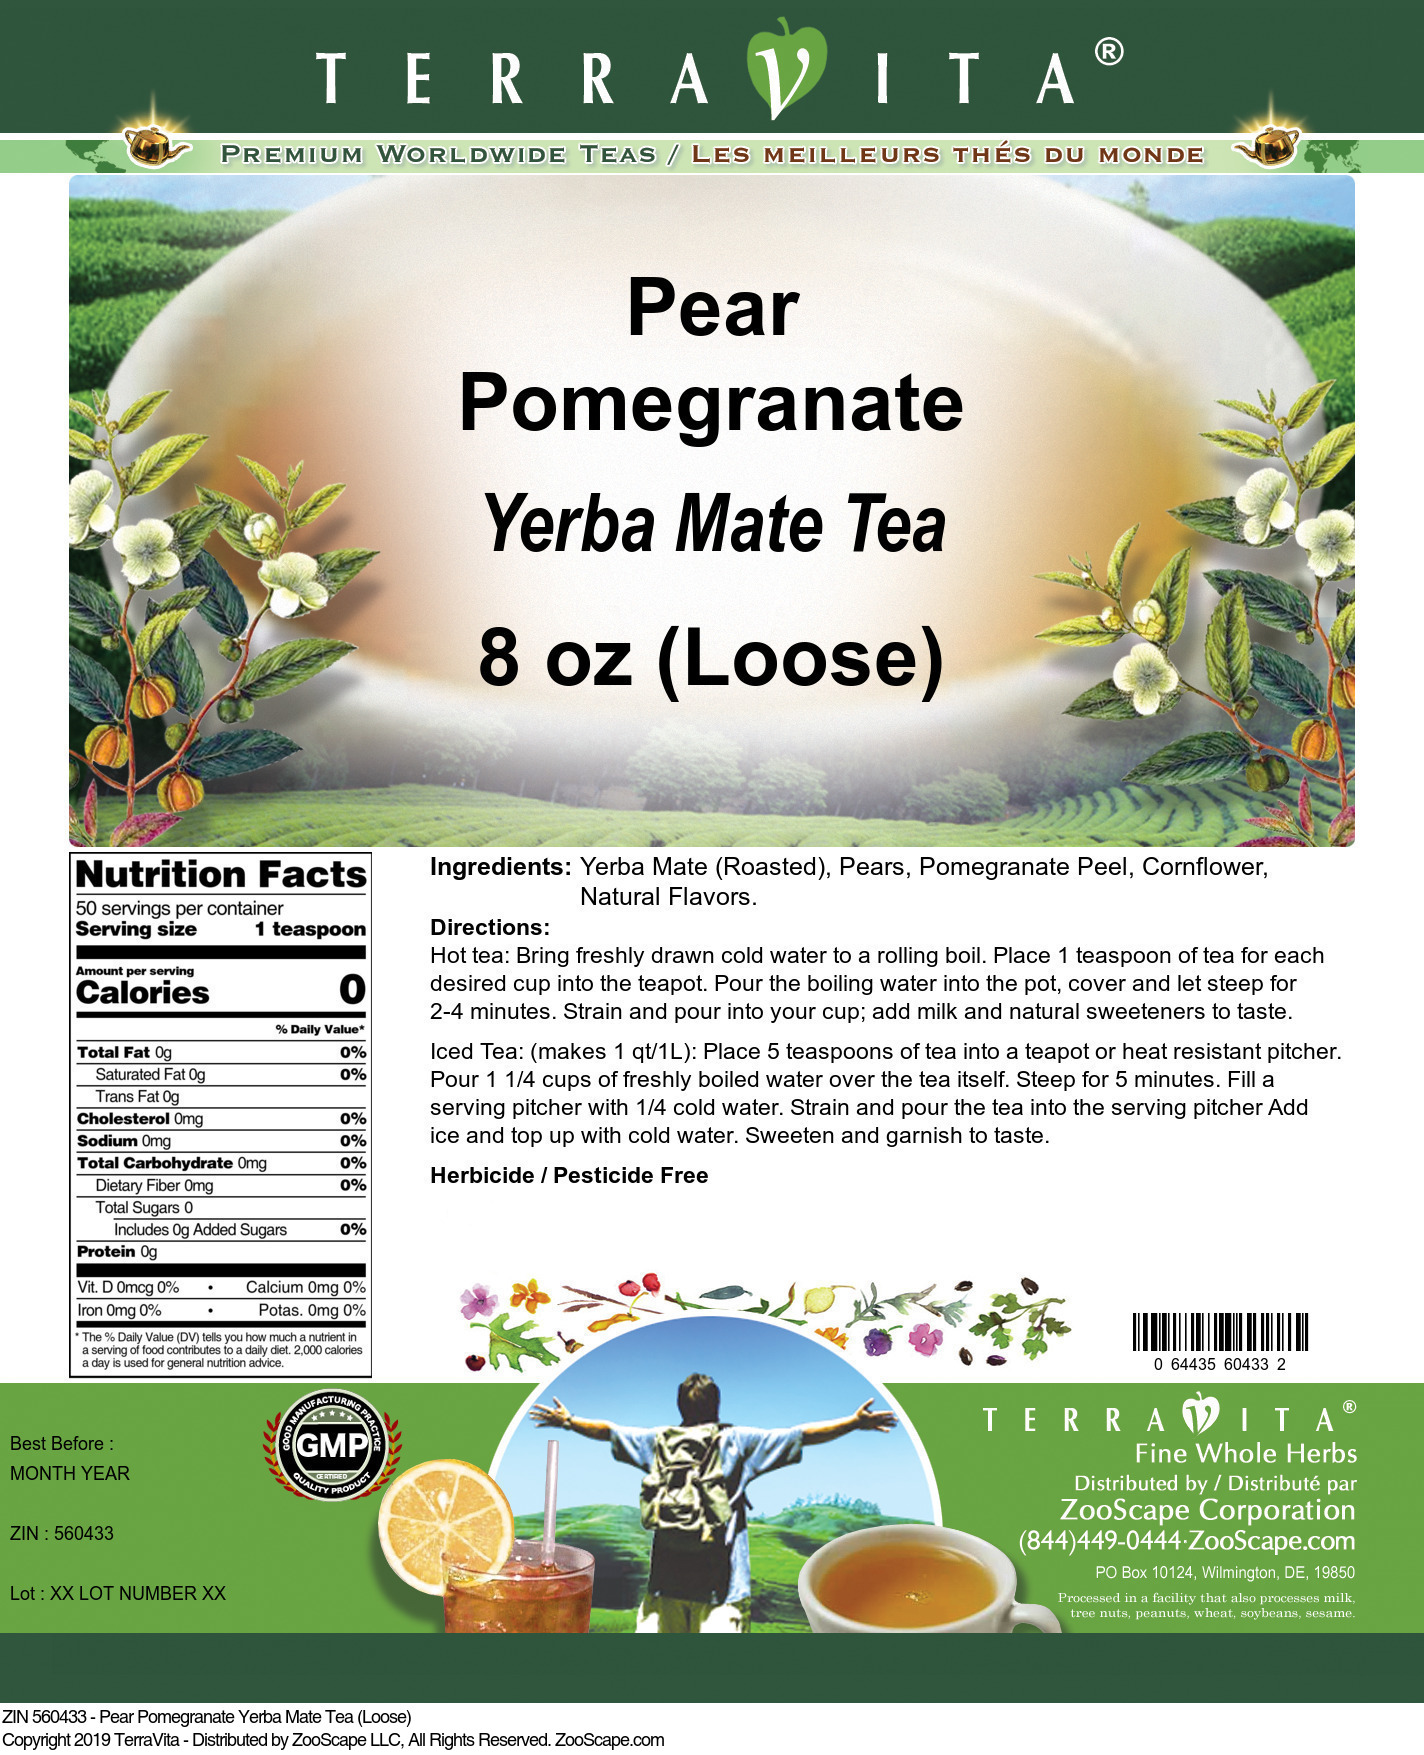 Pear Pomegranate Yerba Mate Tea (Loose) - Label